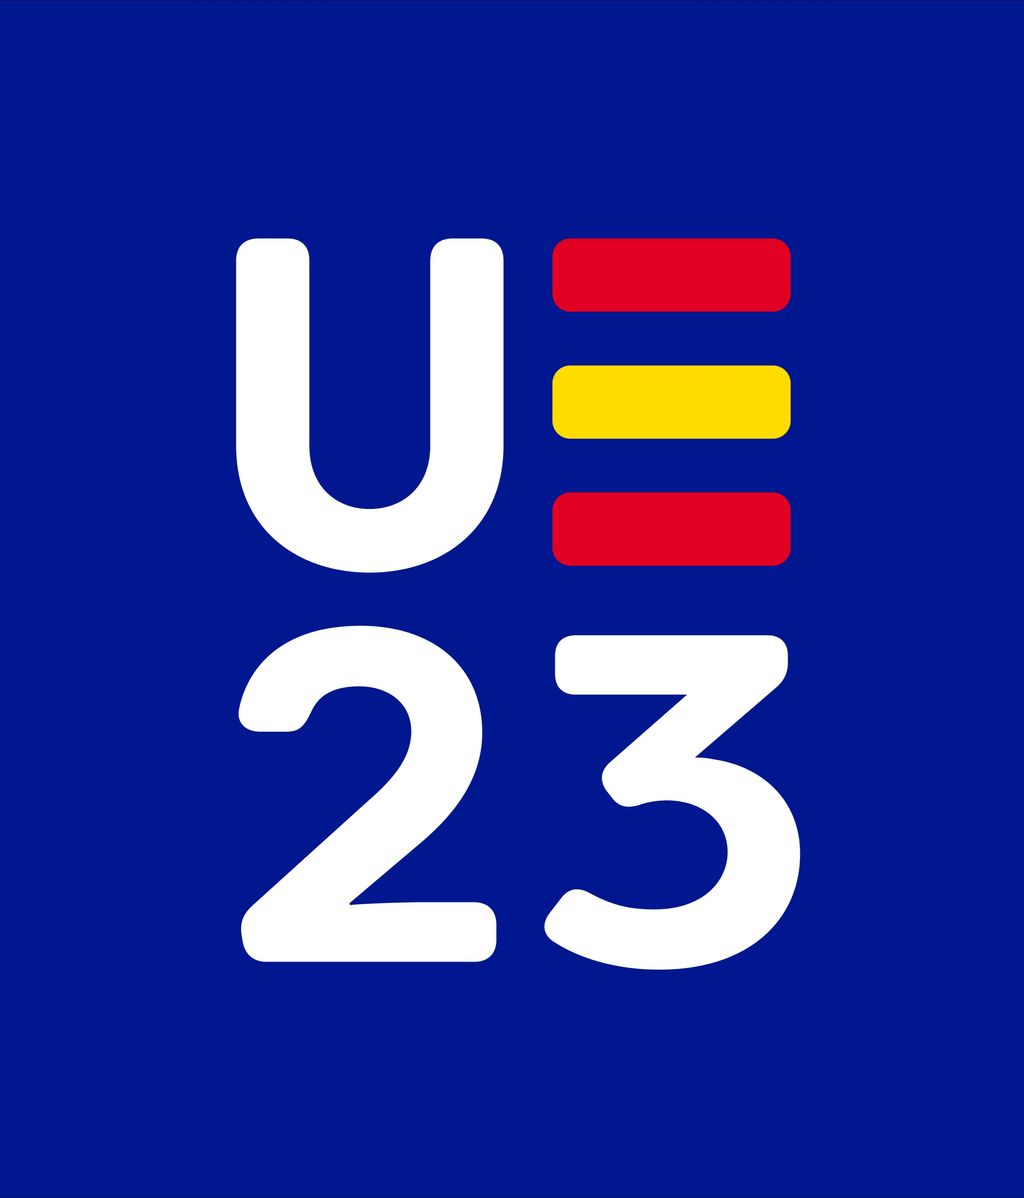 UE 23